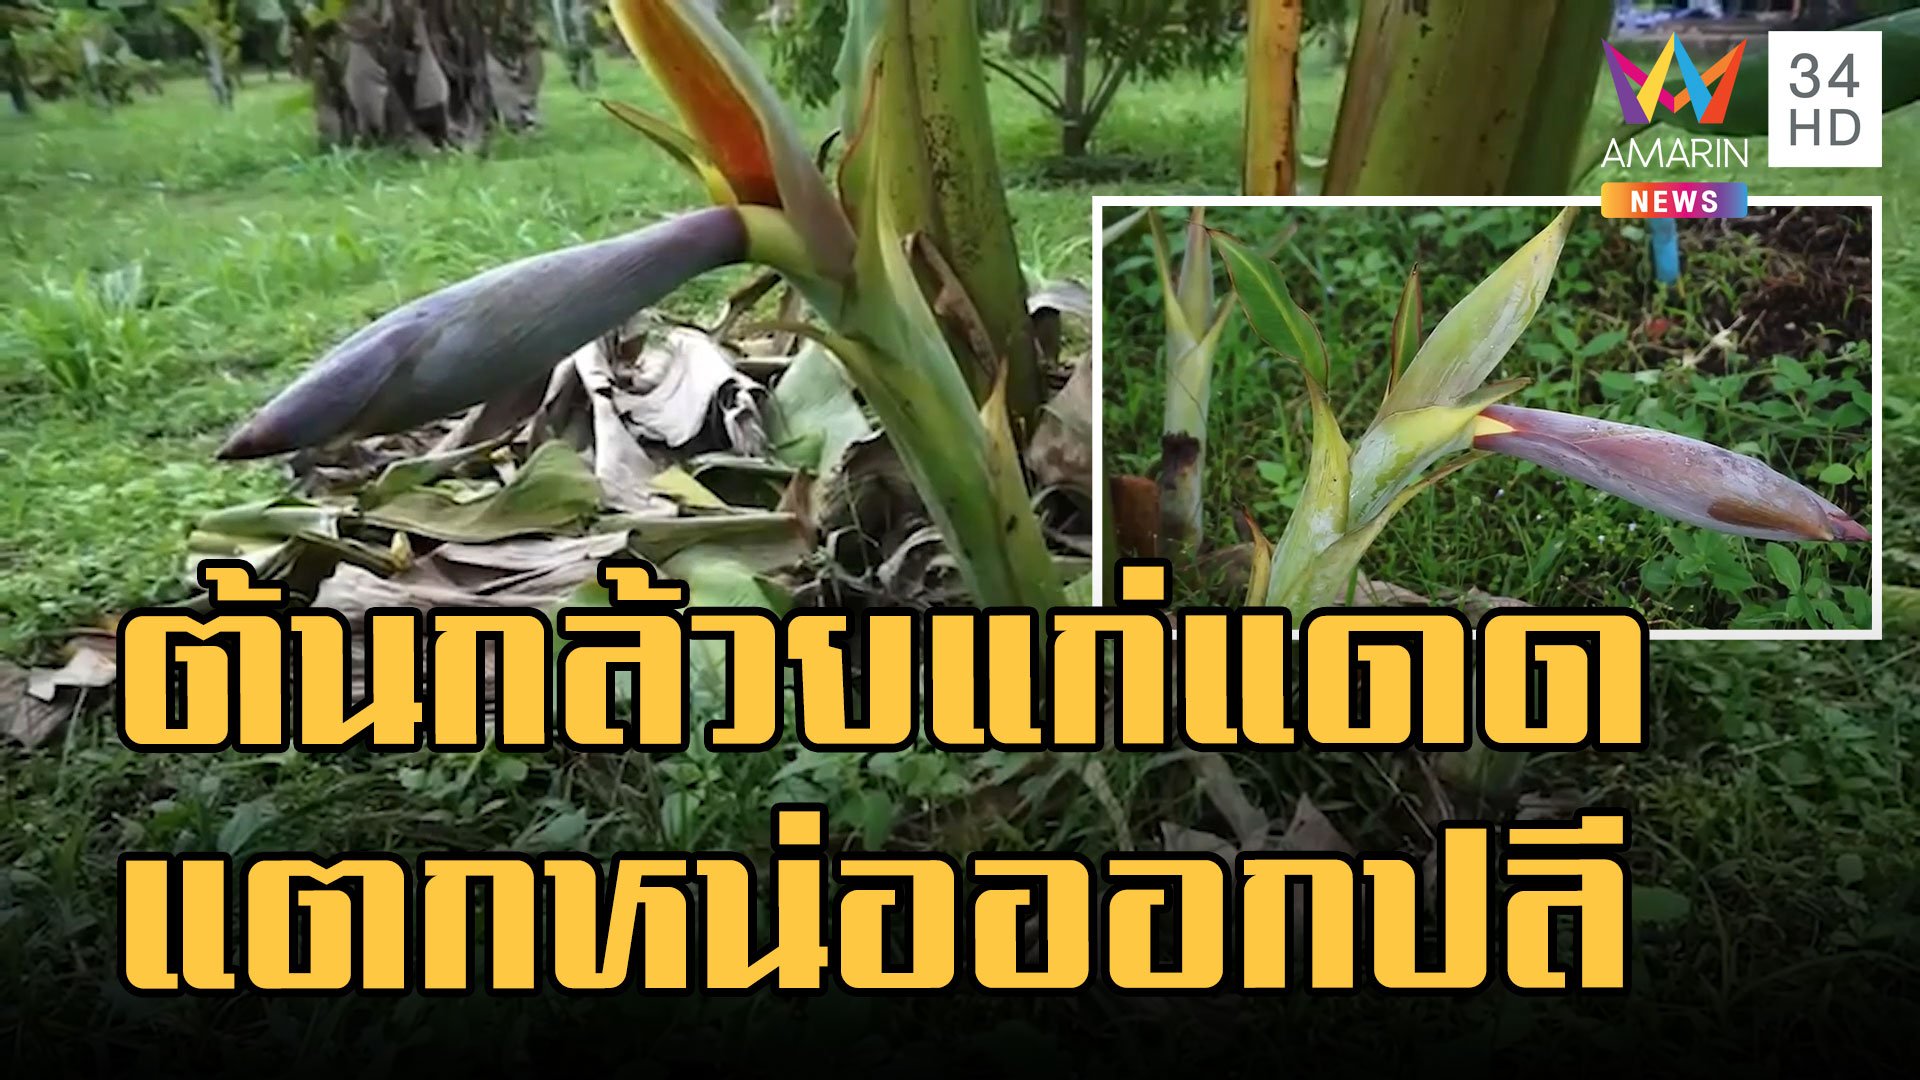 ต้นกล้วยแปลก เพิ่งแตกหน่อแต่ออกปลี เจ้าของสวนบอกเกิดมาไม่เคยเจอ | ข่าวอรุณอมรินทร์ | 26 ก.ย. 65 | AMARIN TVHD34